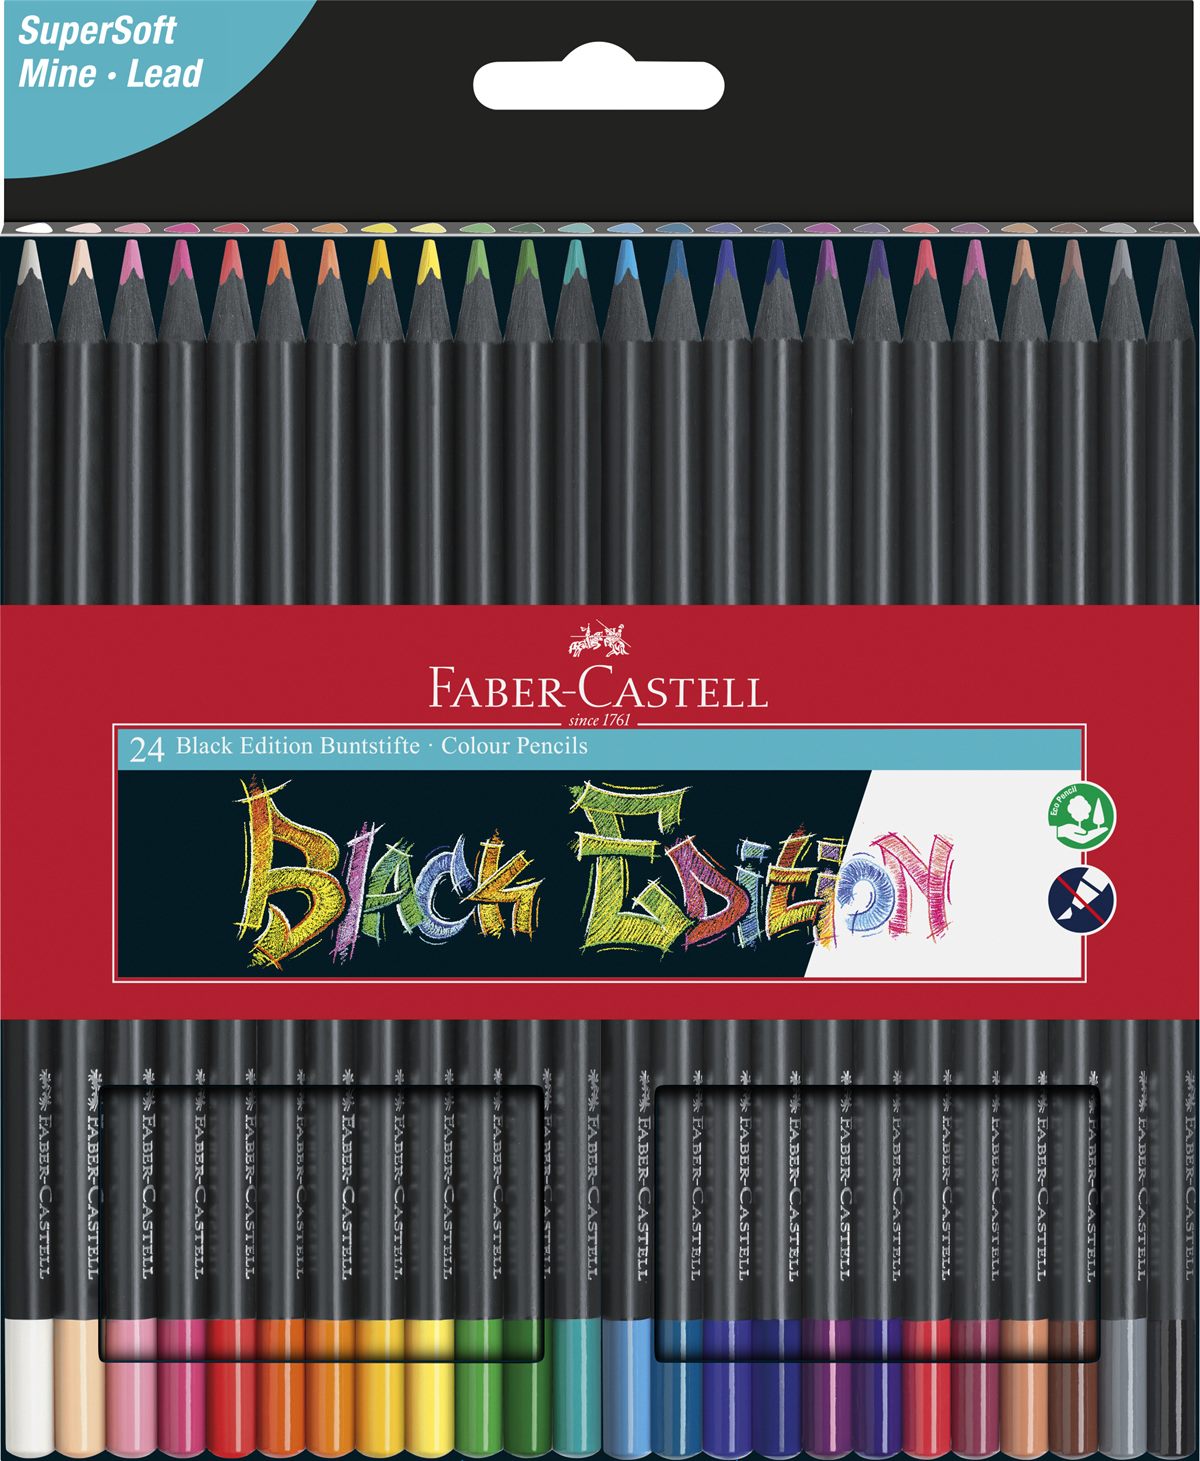 Faber-Castell_Black Edition Buntstifte_Set aus 24_12,00 EUR